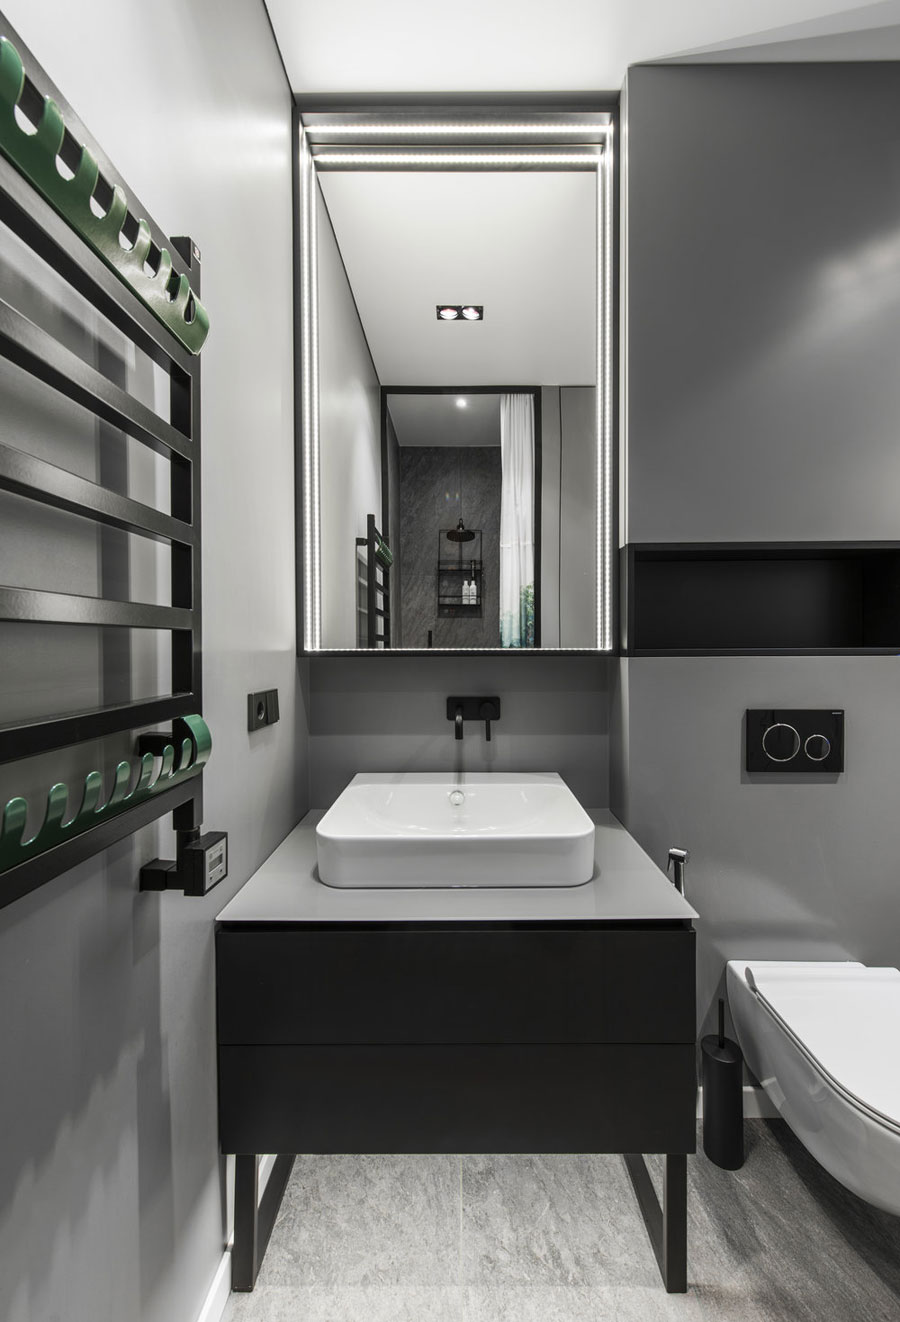 Dubbele inbouwspotjes in een kleine moderne badkamer. Klik hier voor meer foto's.